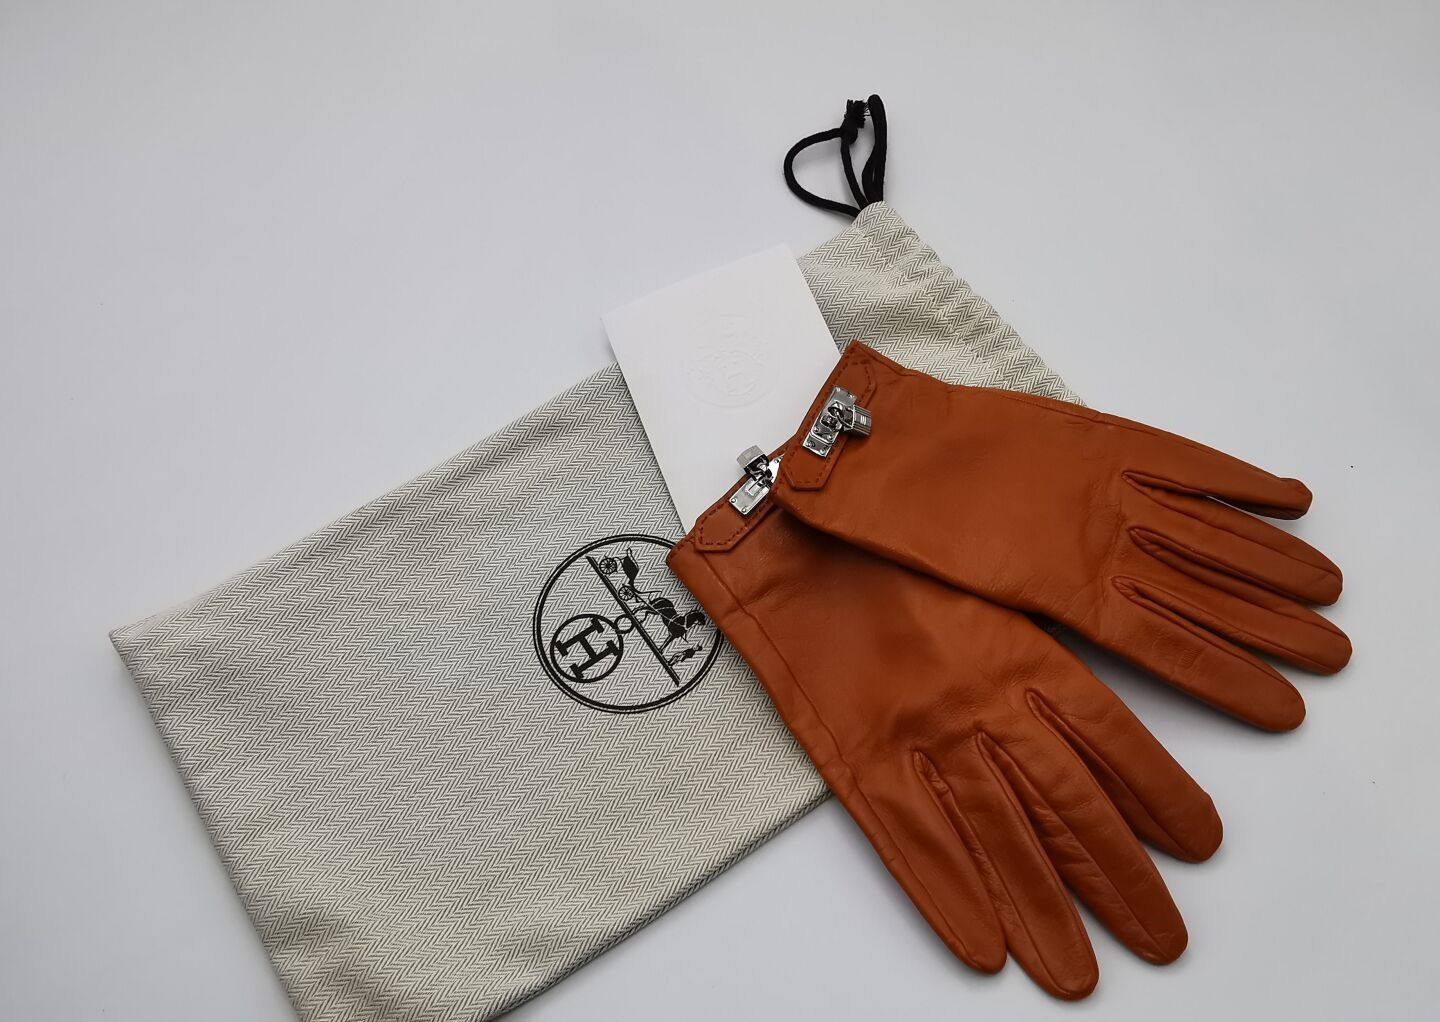 Null 赫米斯
一双SOYA型号的手套，橙色绒毛小羊皮，钯色凯利珠宝，丝绸衬里。
尺寸：7.5。
爱马仕的清洁发票和小袋。